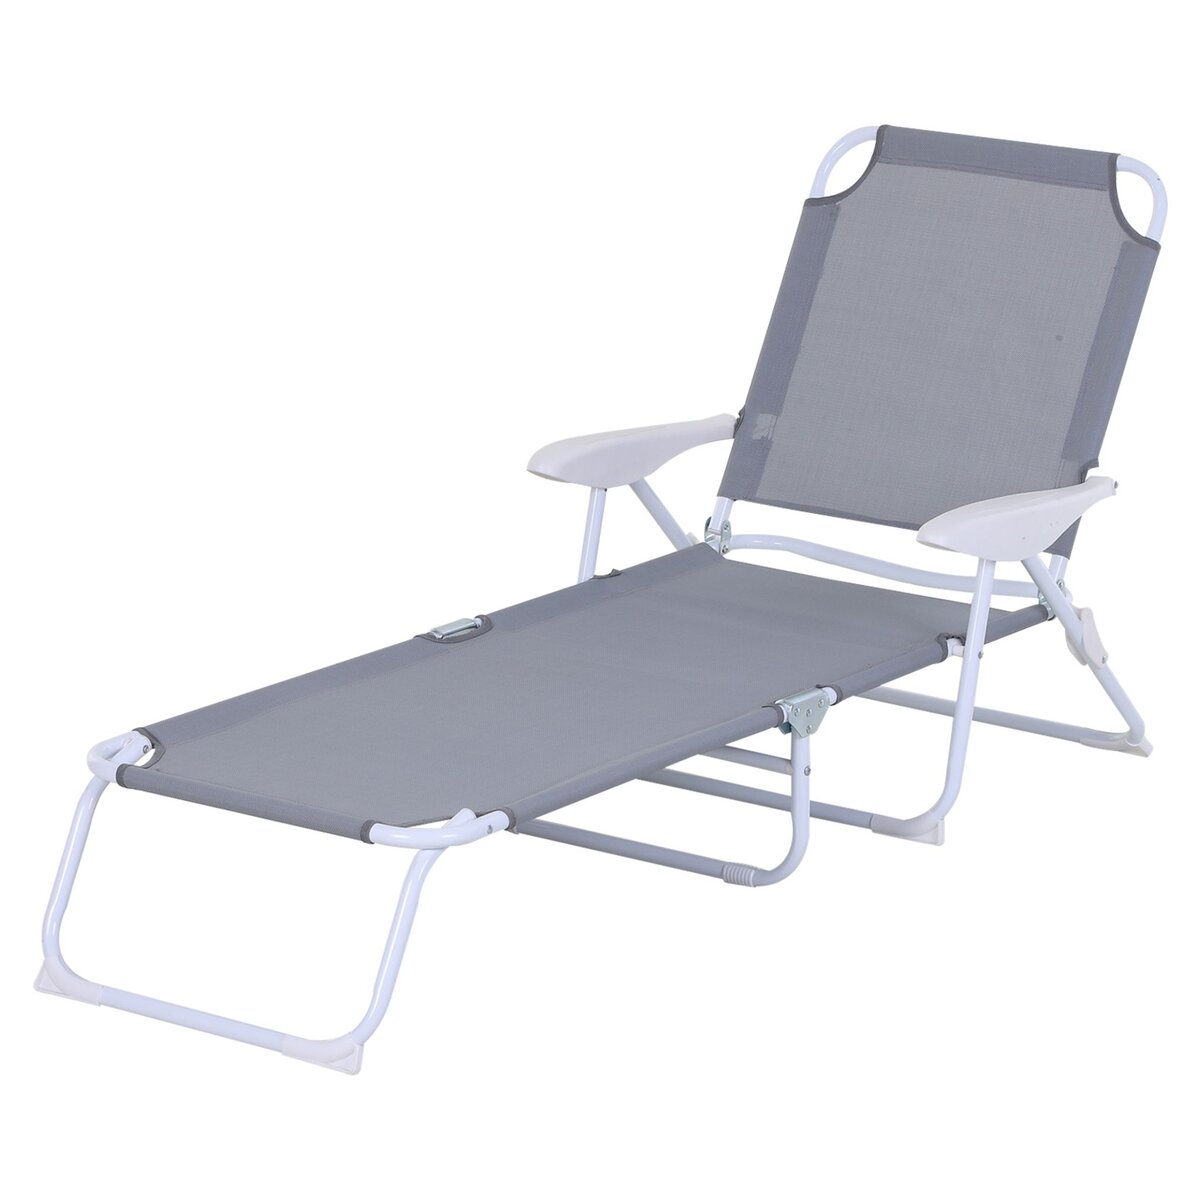 OUTSUNNY Bain de soleil pliable - transat inclinable 4 positions - chaise longue grand confort avec accoudoirs - métal époxy textilène - dim. 160L x 66l x 80H cm - gris clair